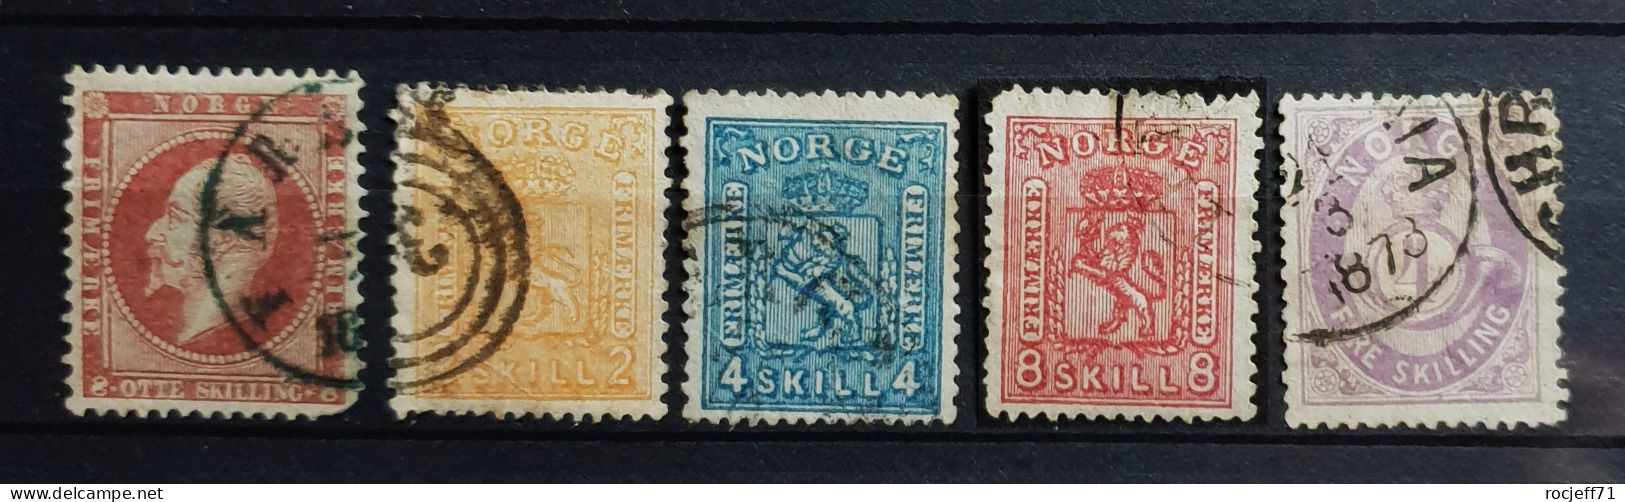 05 - 24 - Gino - Norvege Lot De Vieux Timbres - Norway Old Stamps - Value : 280 Euros - Oblitérés